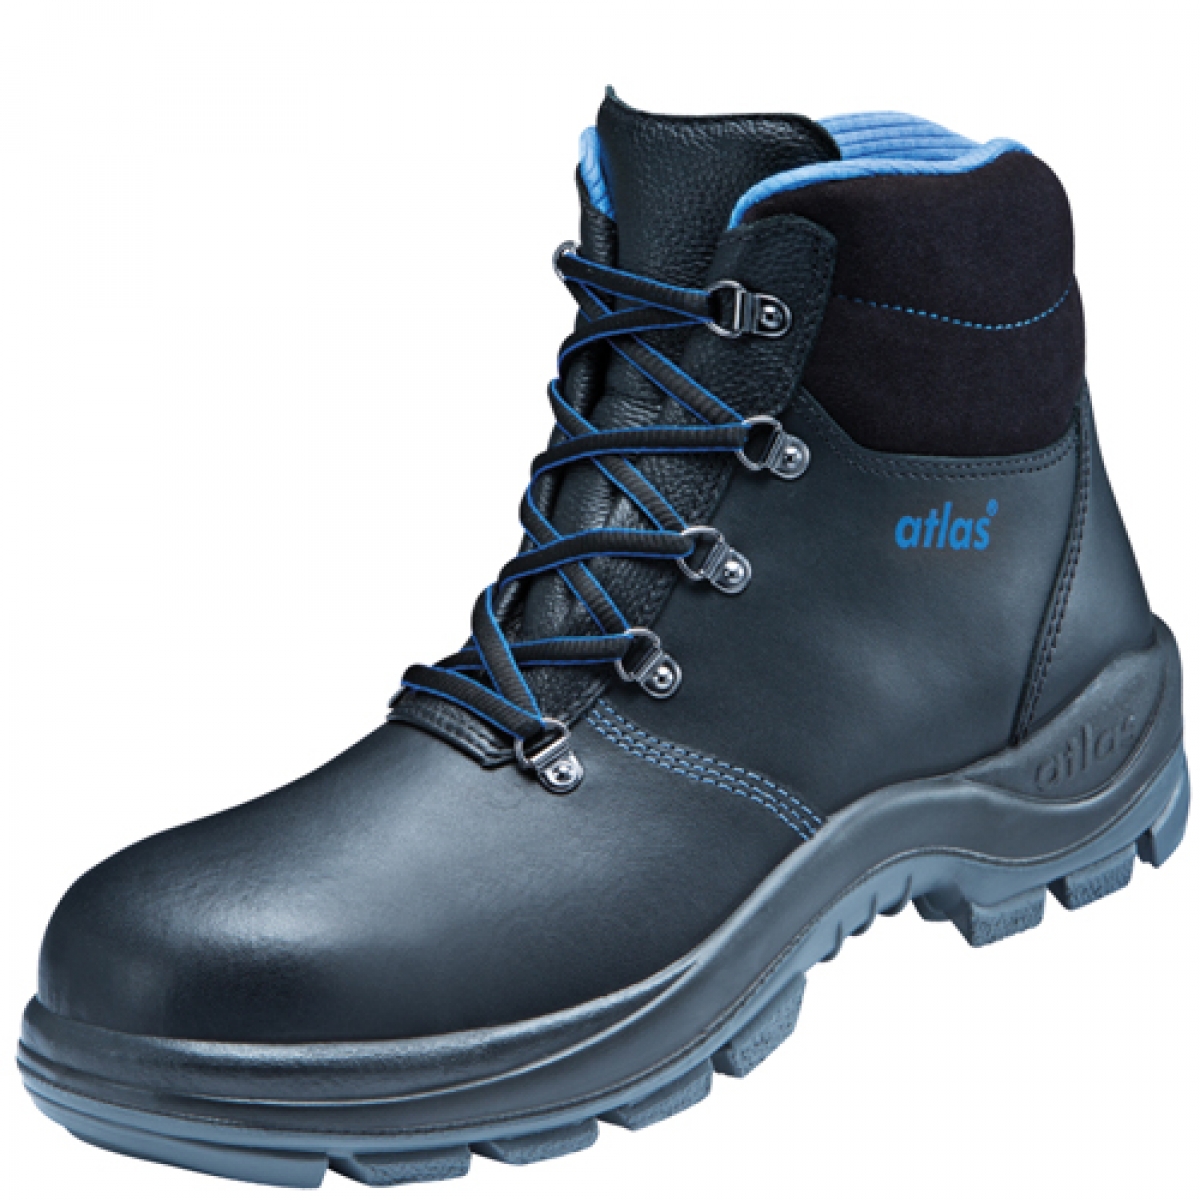 Atlas-Footwear, S3-Arbeits-Berufs-Sicherheits-Schuhe, Hochschuhe, XP 155, Weite: 12, schwarz